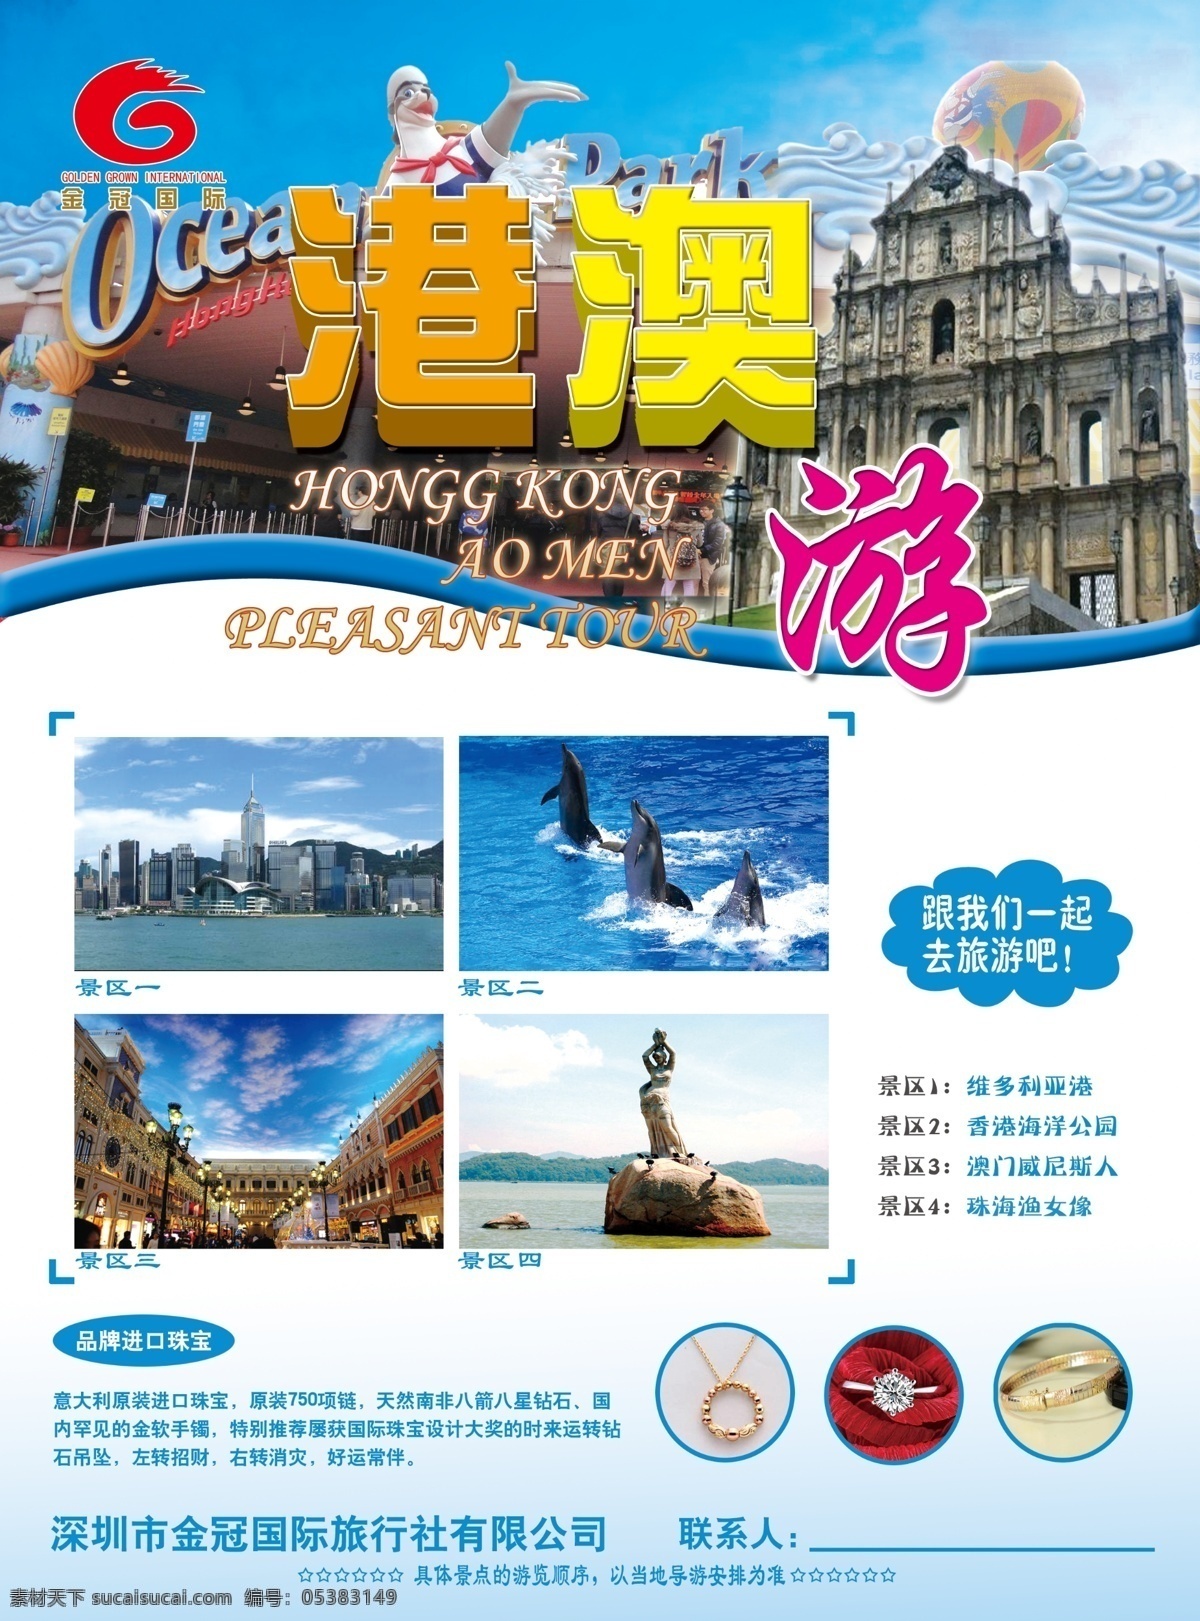 港澳游传单 香港 澳门 旅游 鲜艳 蓝色 清晰 宣传单 dm宣传单